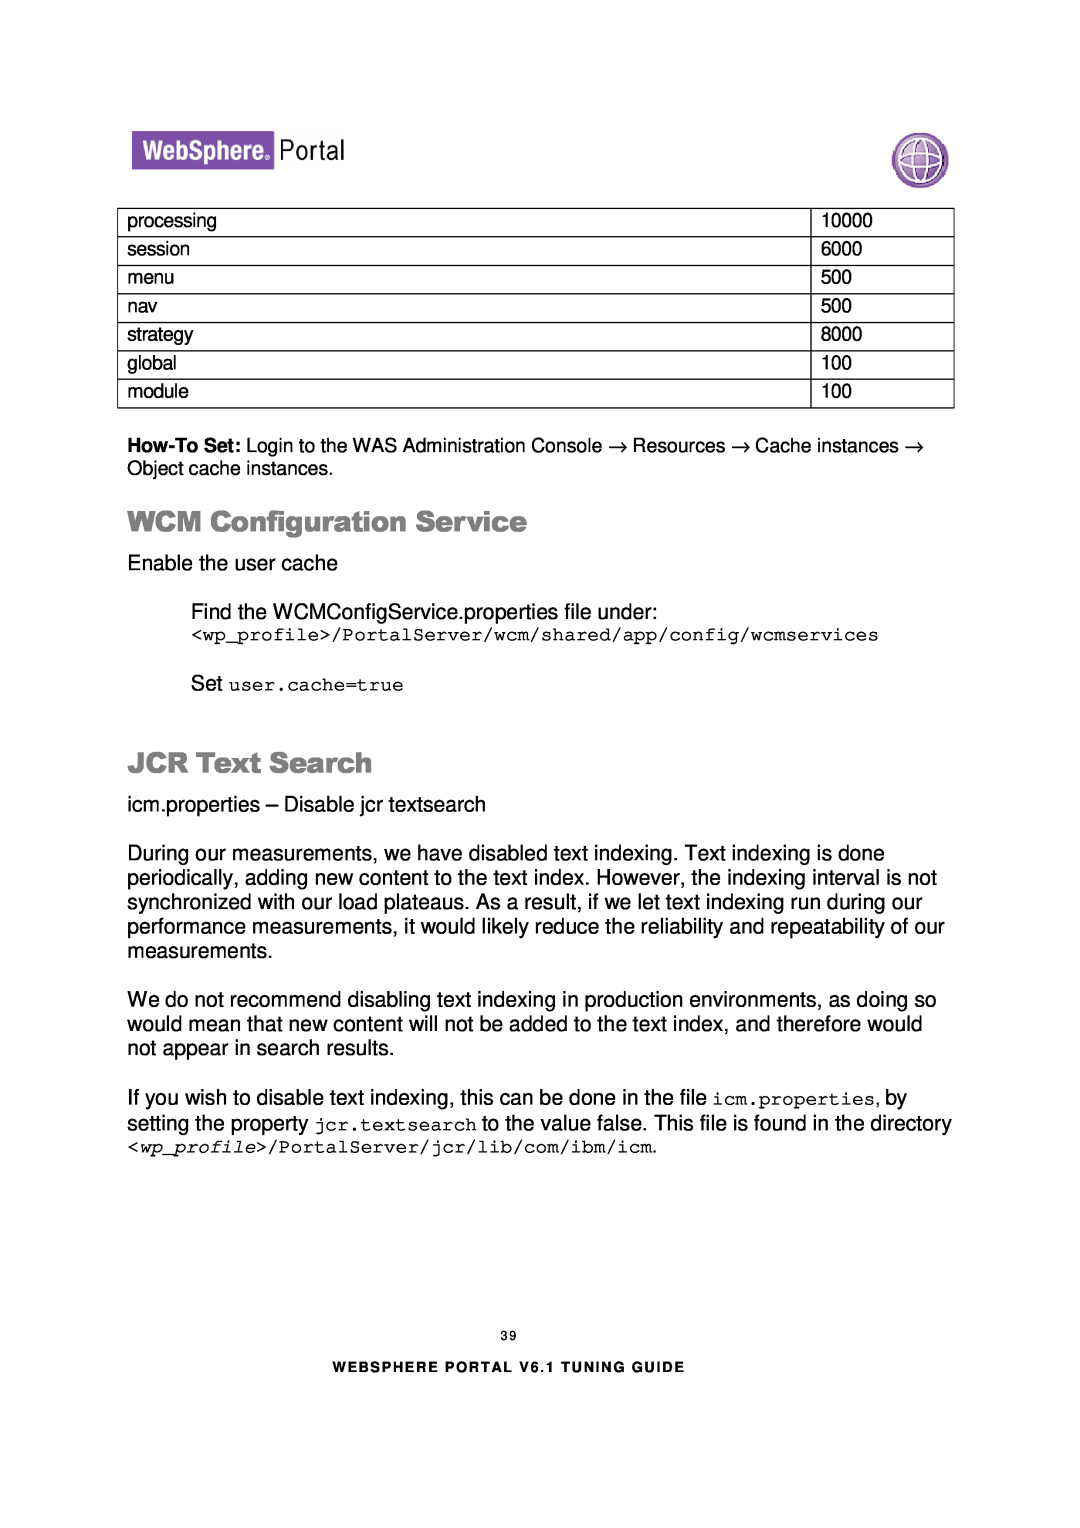 IBM 6.1.X manual WCM Configuration Service, JCR Text Search 